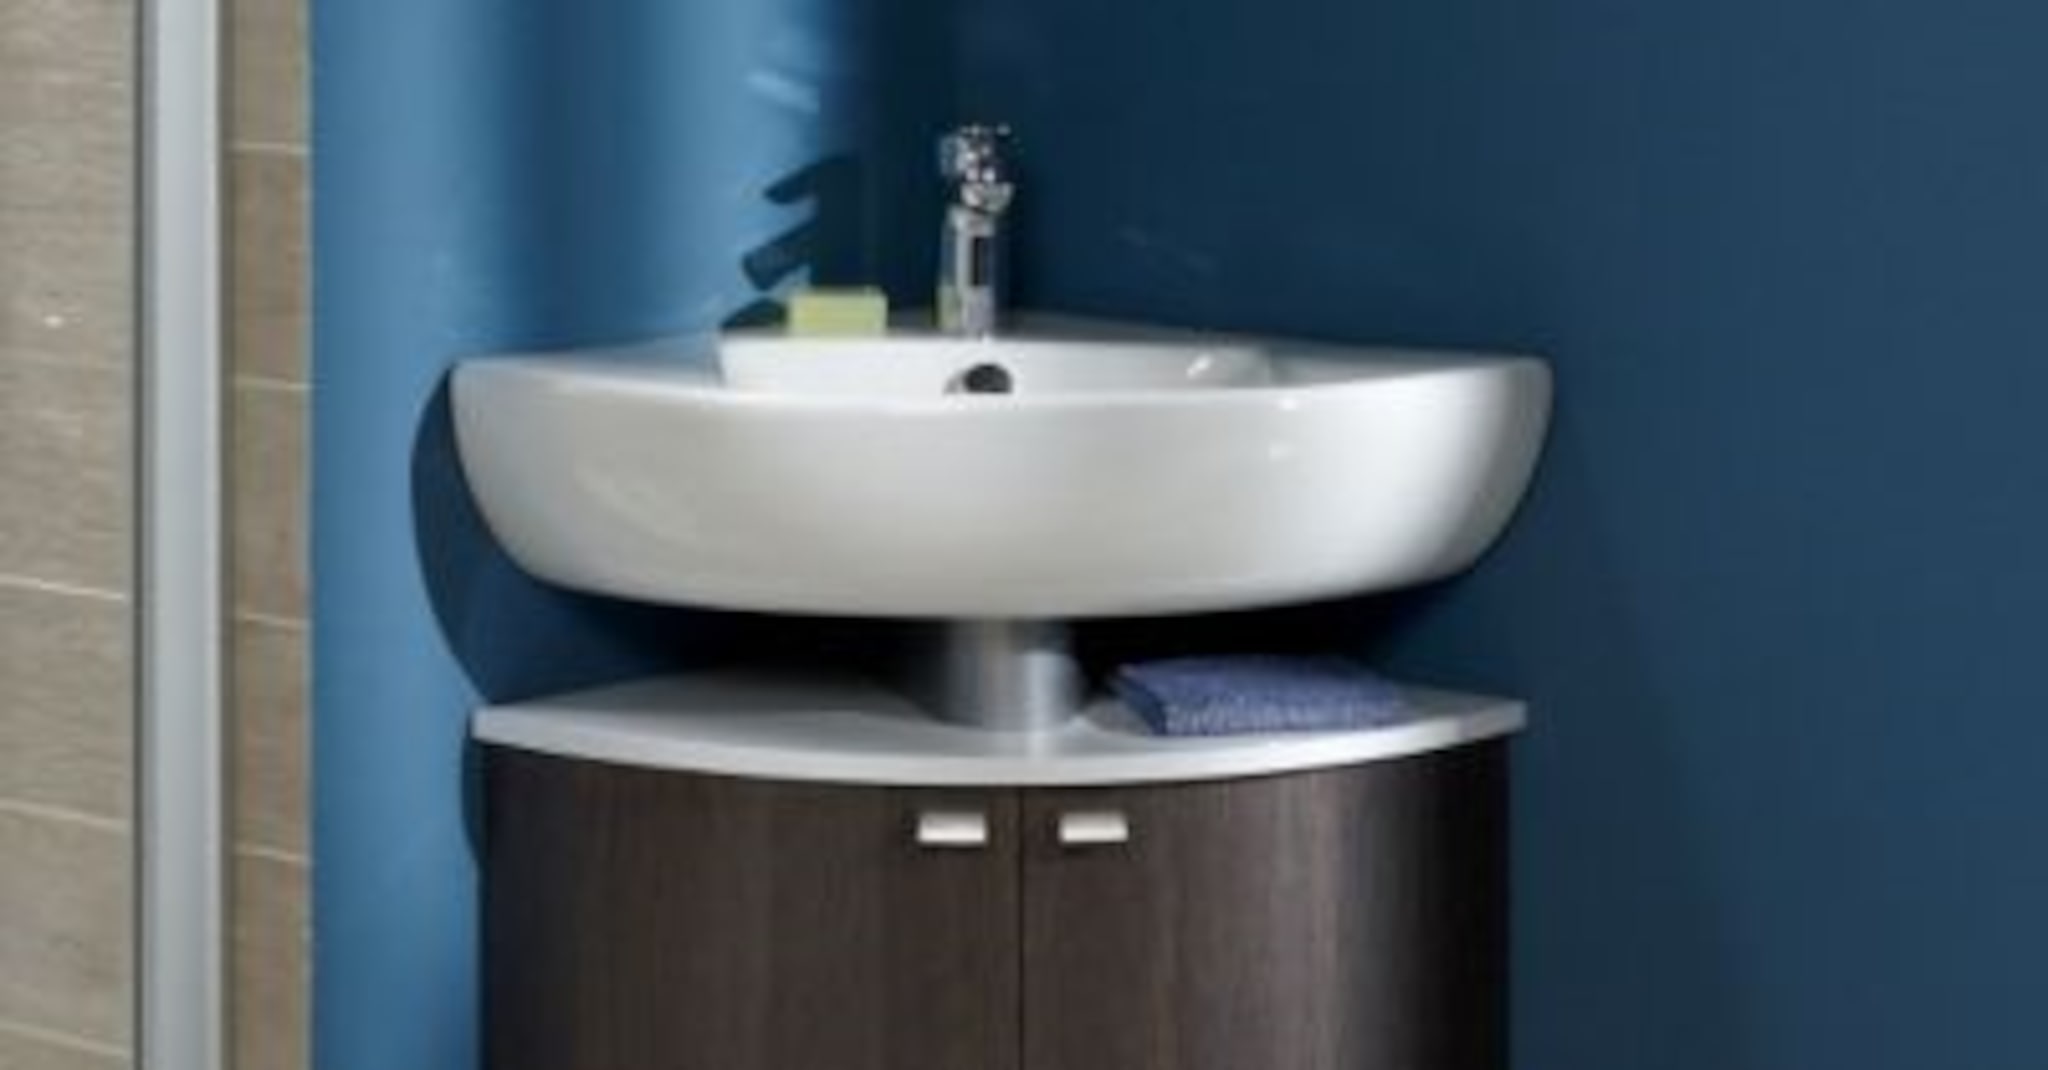 Évier en céramique vasque a poser carré moderne pour salle de bain